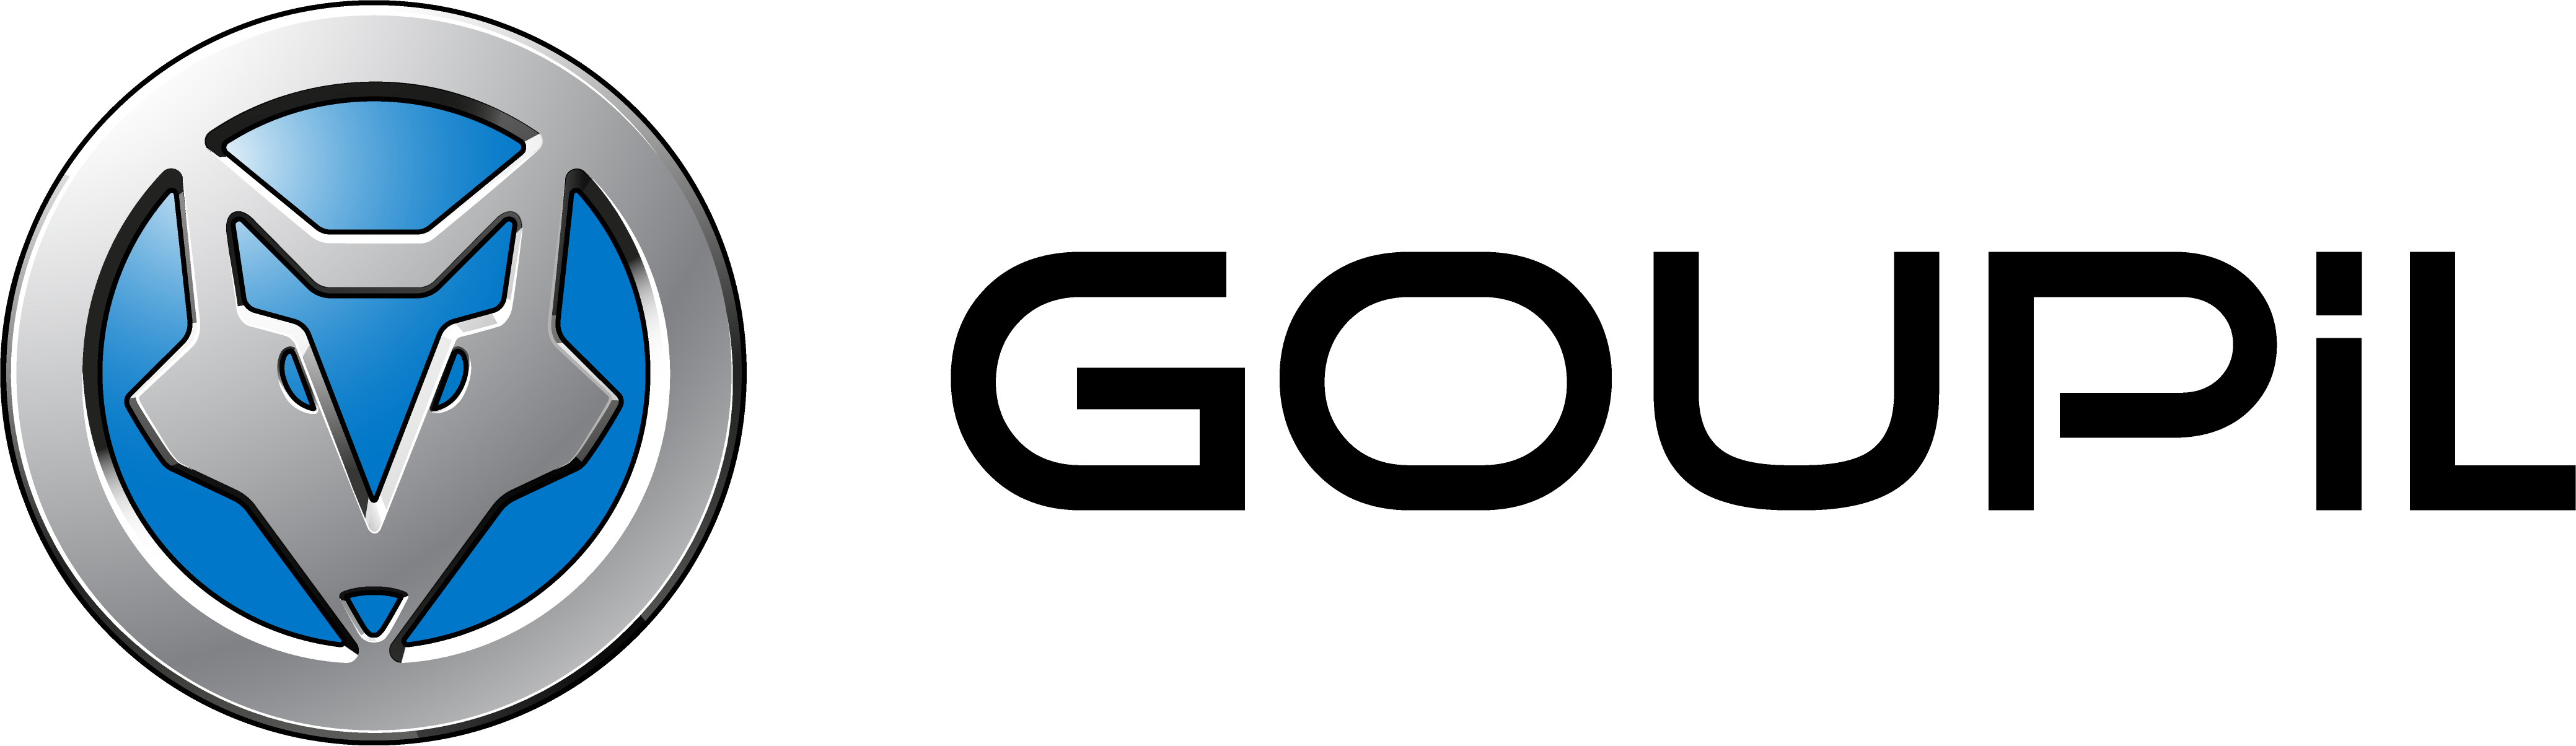 Goupil logo